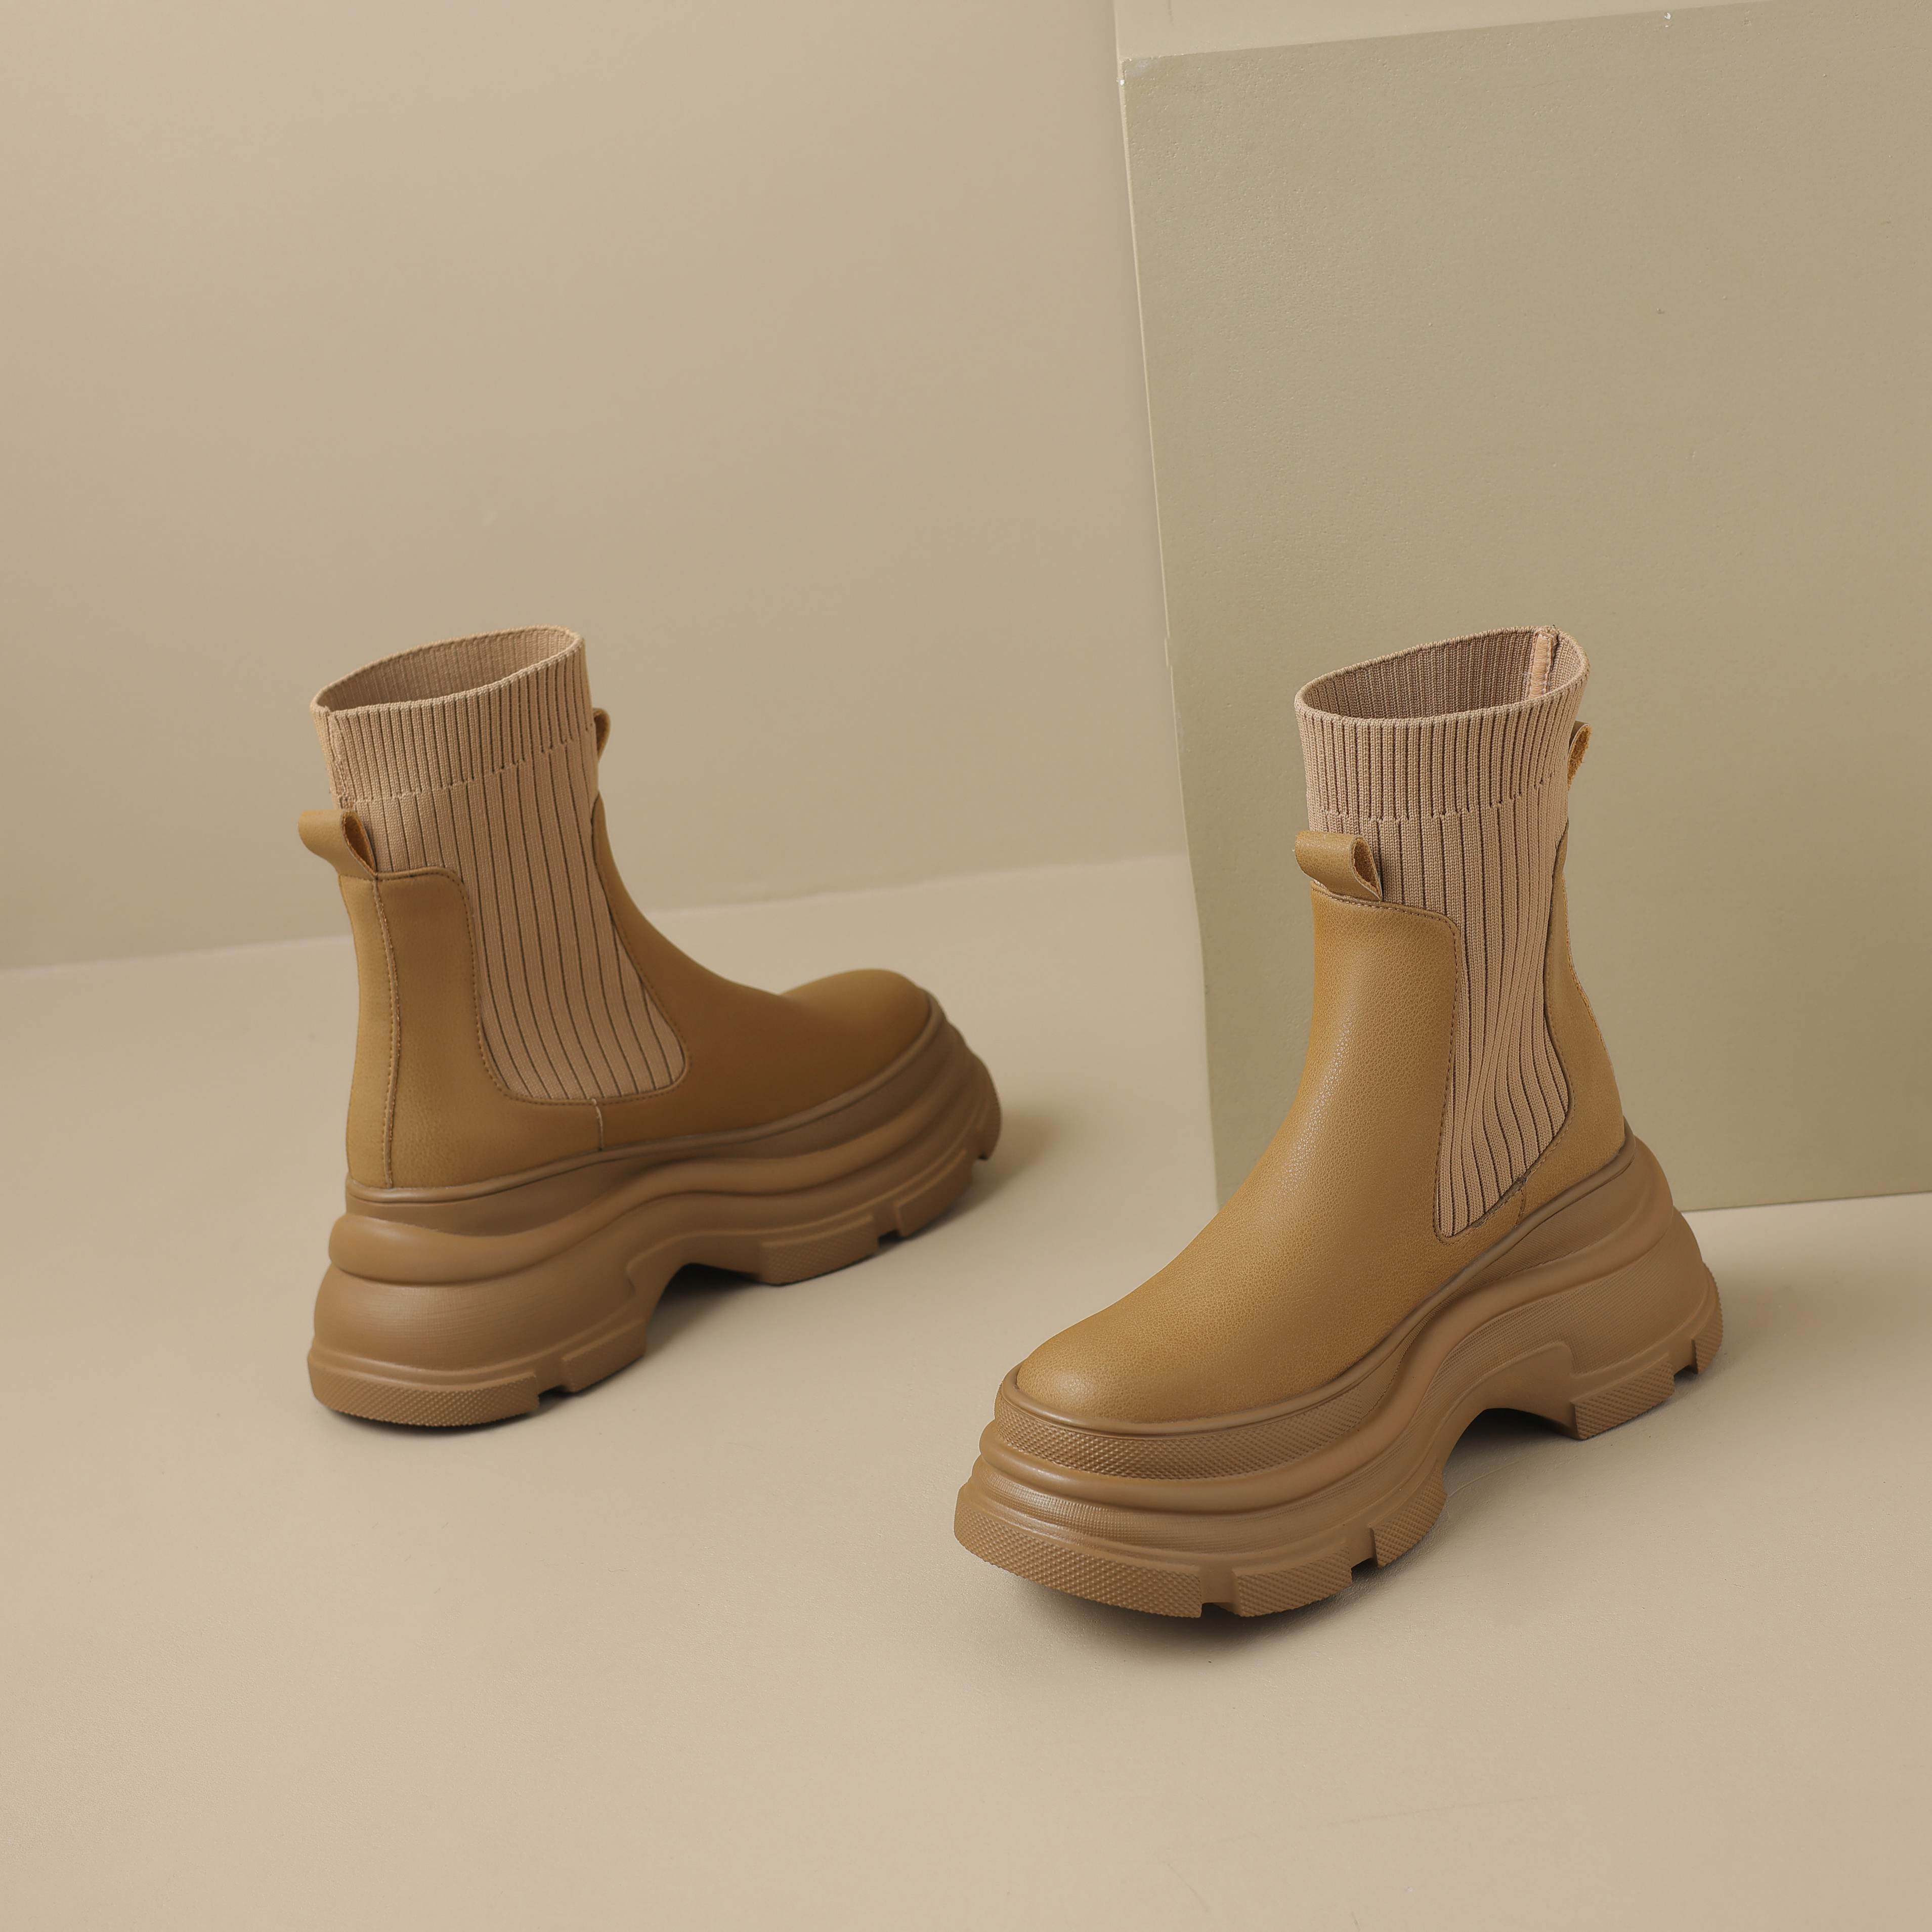 Platform Boots Color Apricot Size 5.5 for Women